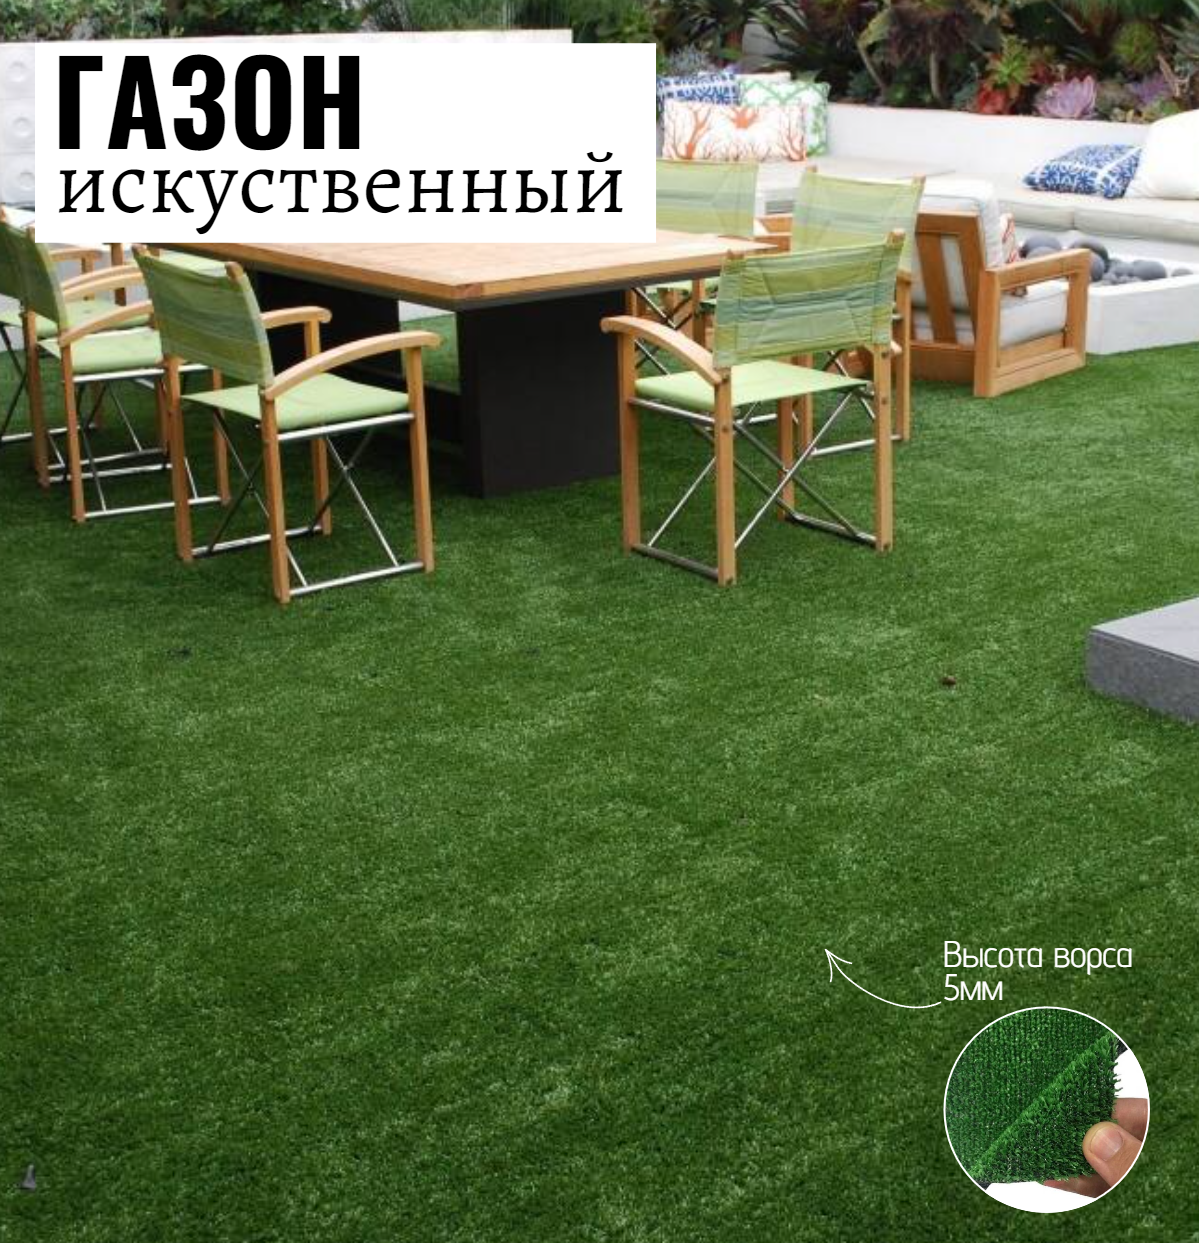 Искусственный газон Салон Ковров газон gzn-2-035 1 шт. 2х3.5м